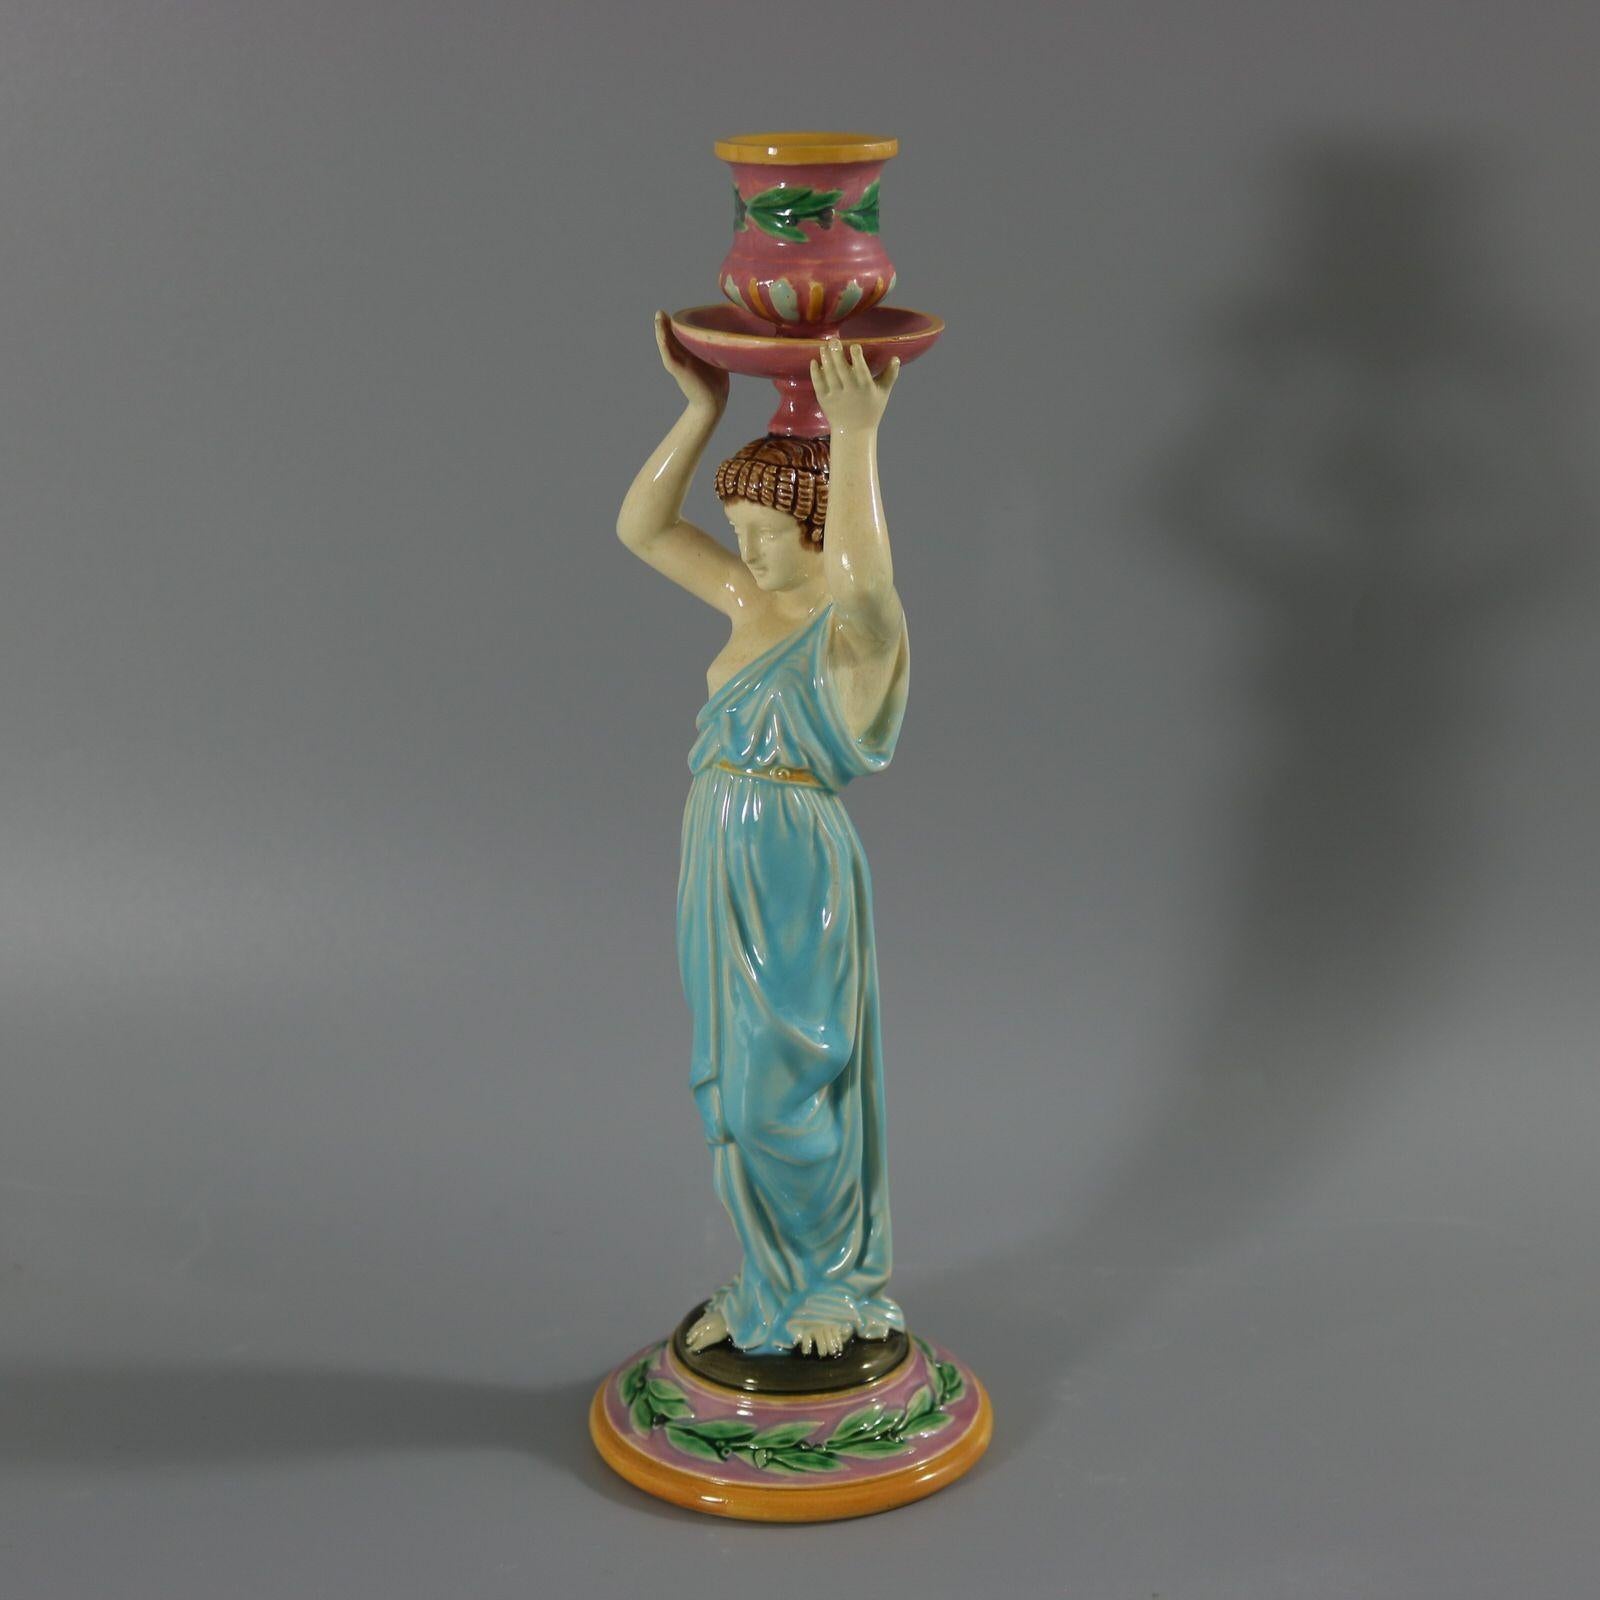 Bougeoir en majolique de George Jones représentant une dame vêtue d'une robe classique et fluide, tenant l'applique au-dessus de sa tête. Cette pièce est l'une des quelques pièces de George Jones inspirées par l'Égypte ancienne et les Égyptiens.